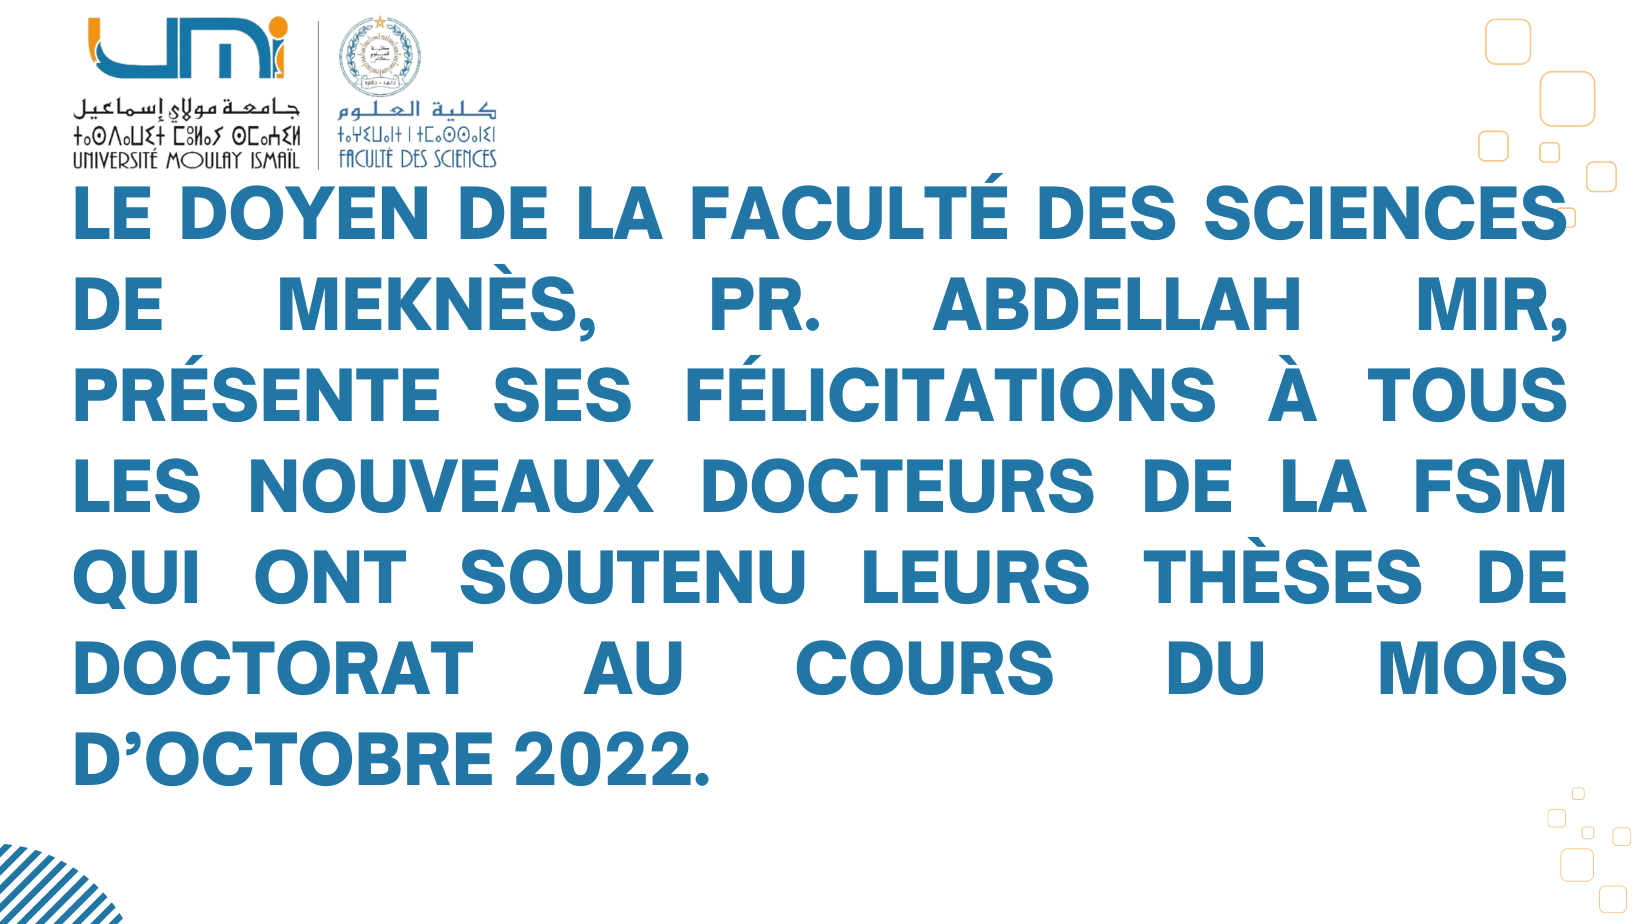 Lire la suite à propos de l’article Le Doyen de la Faculté des Sciences de Meknès, Pr. Abdellah MIR, présente ses félicitations à tous les nouveaux docteurs de la FSM qui ont soutenu leurs thèses de Doctorat au cours du mois d’octobre 2022.